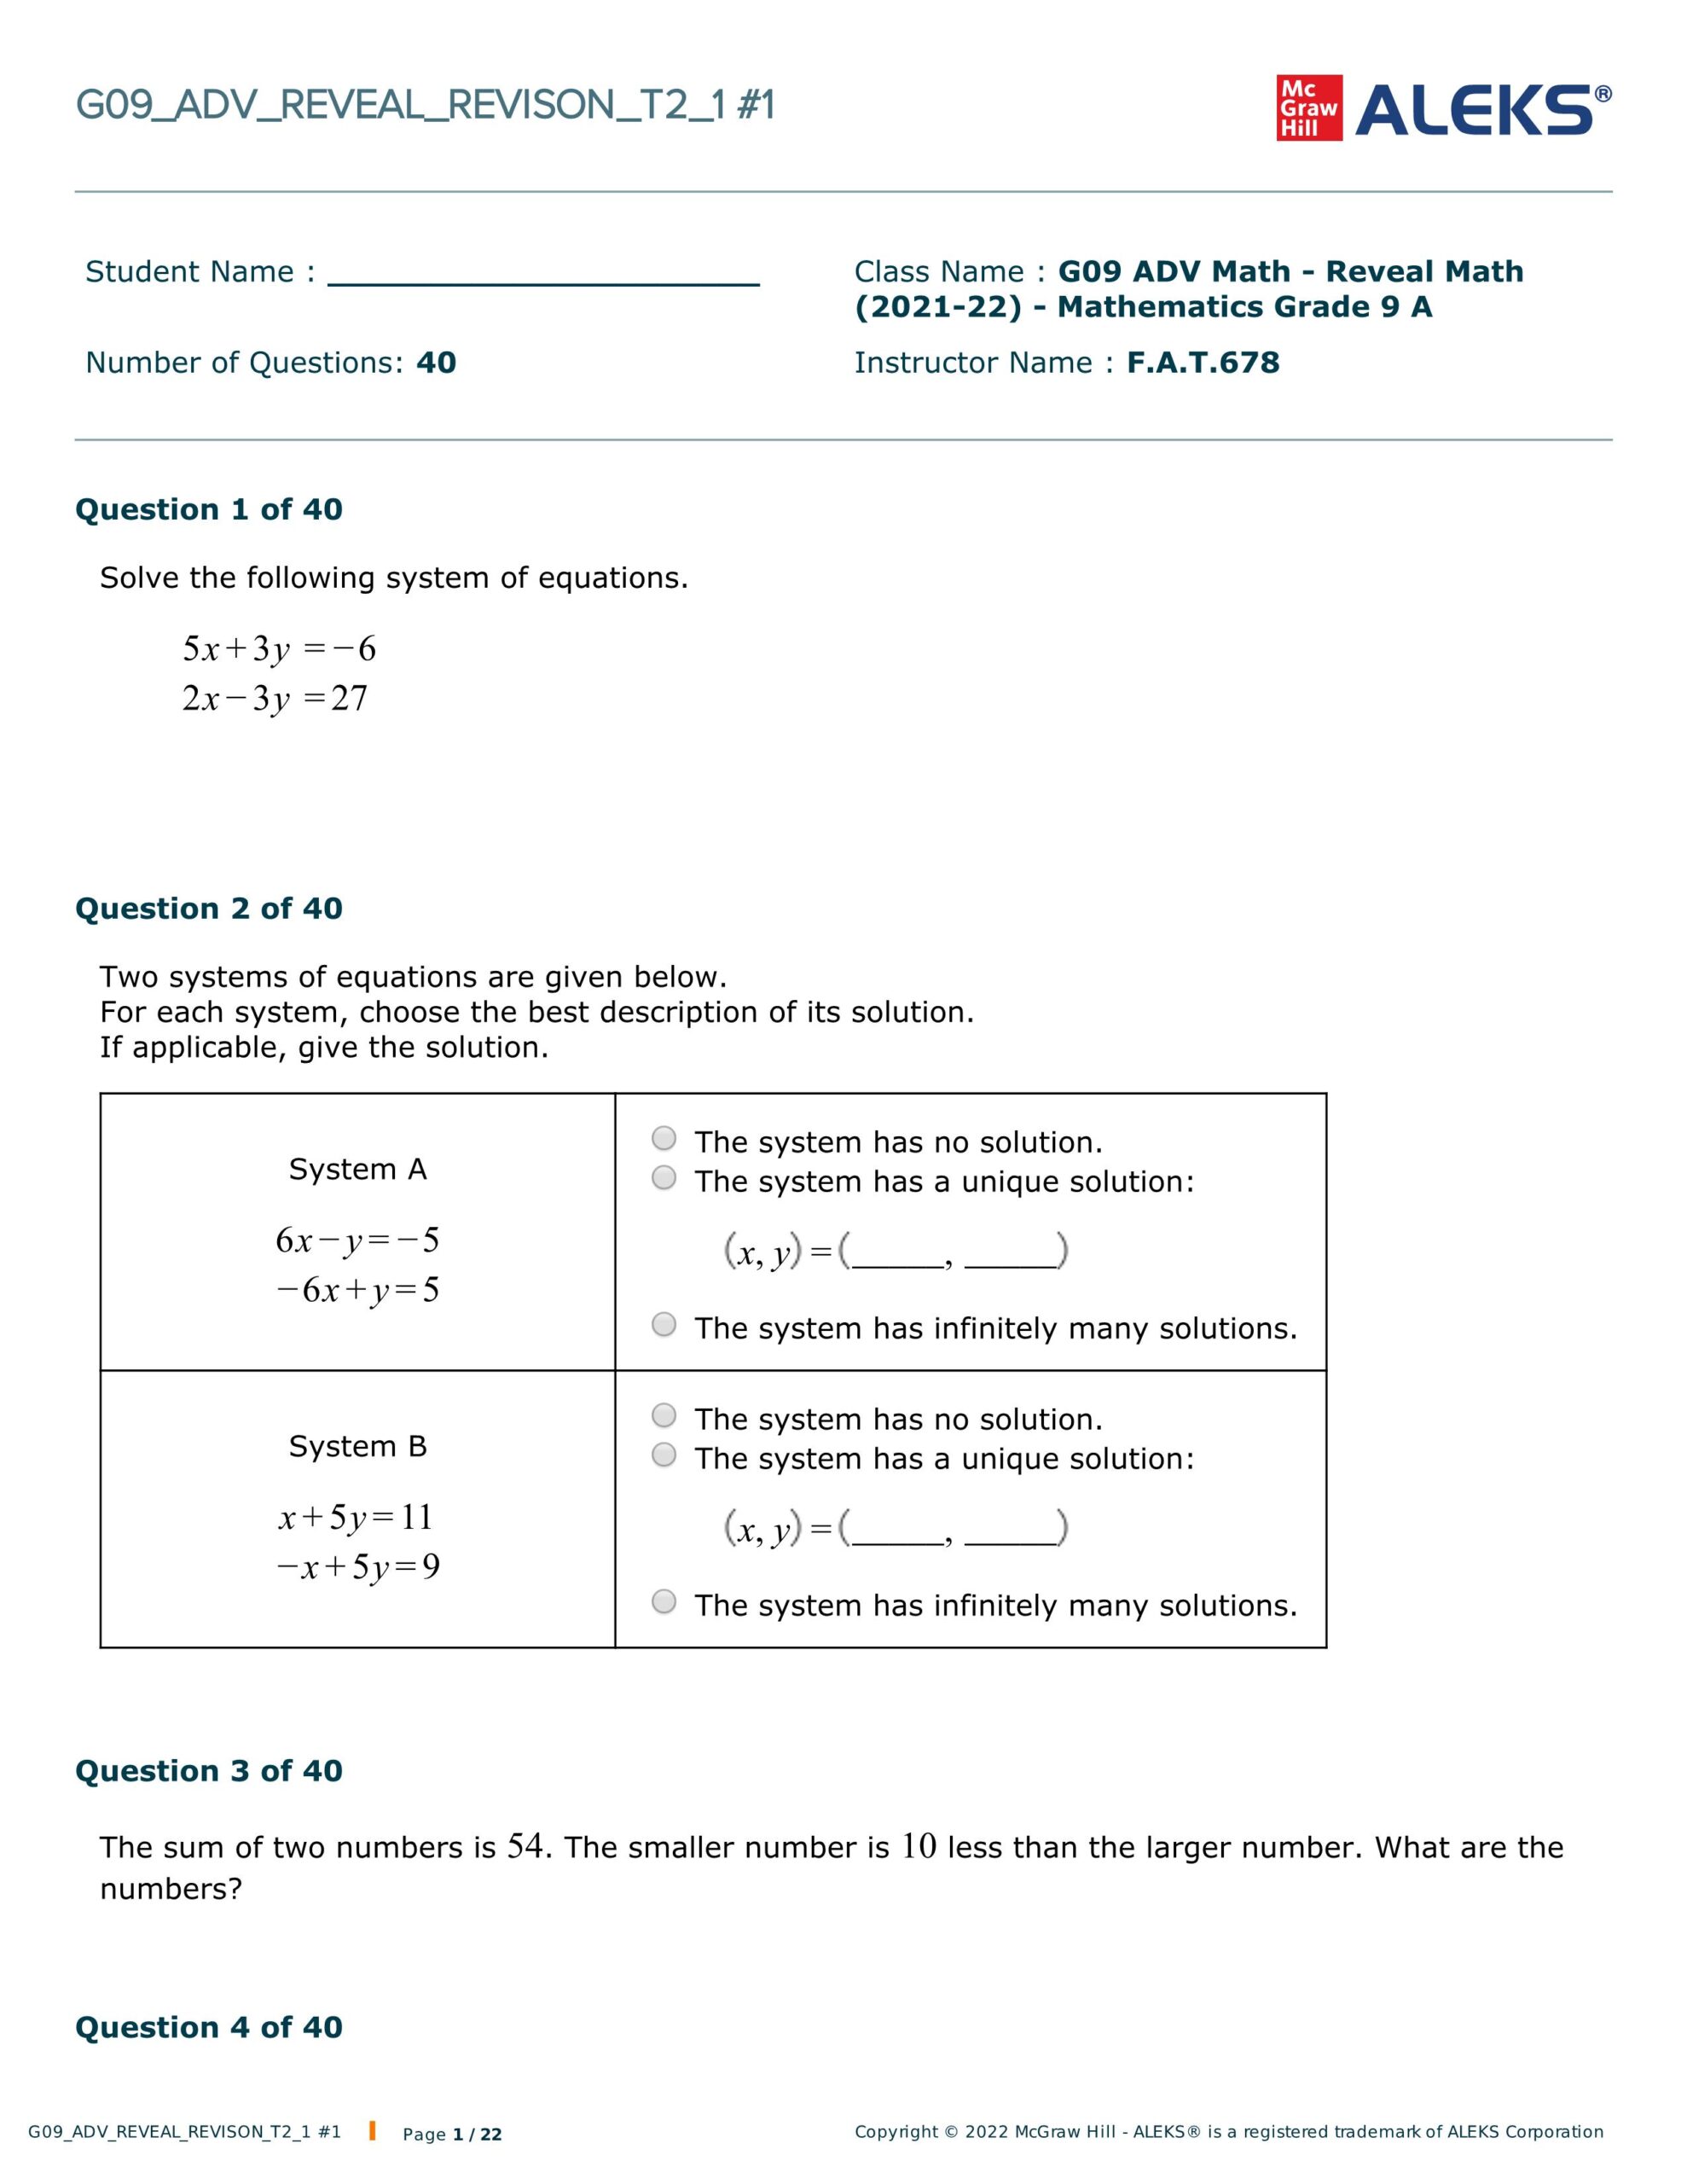 أوراق عمل متنوعة الرياضيات المتكاملة الصف التاسع